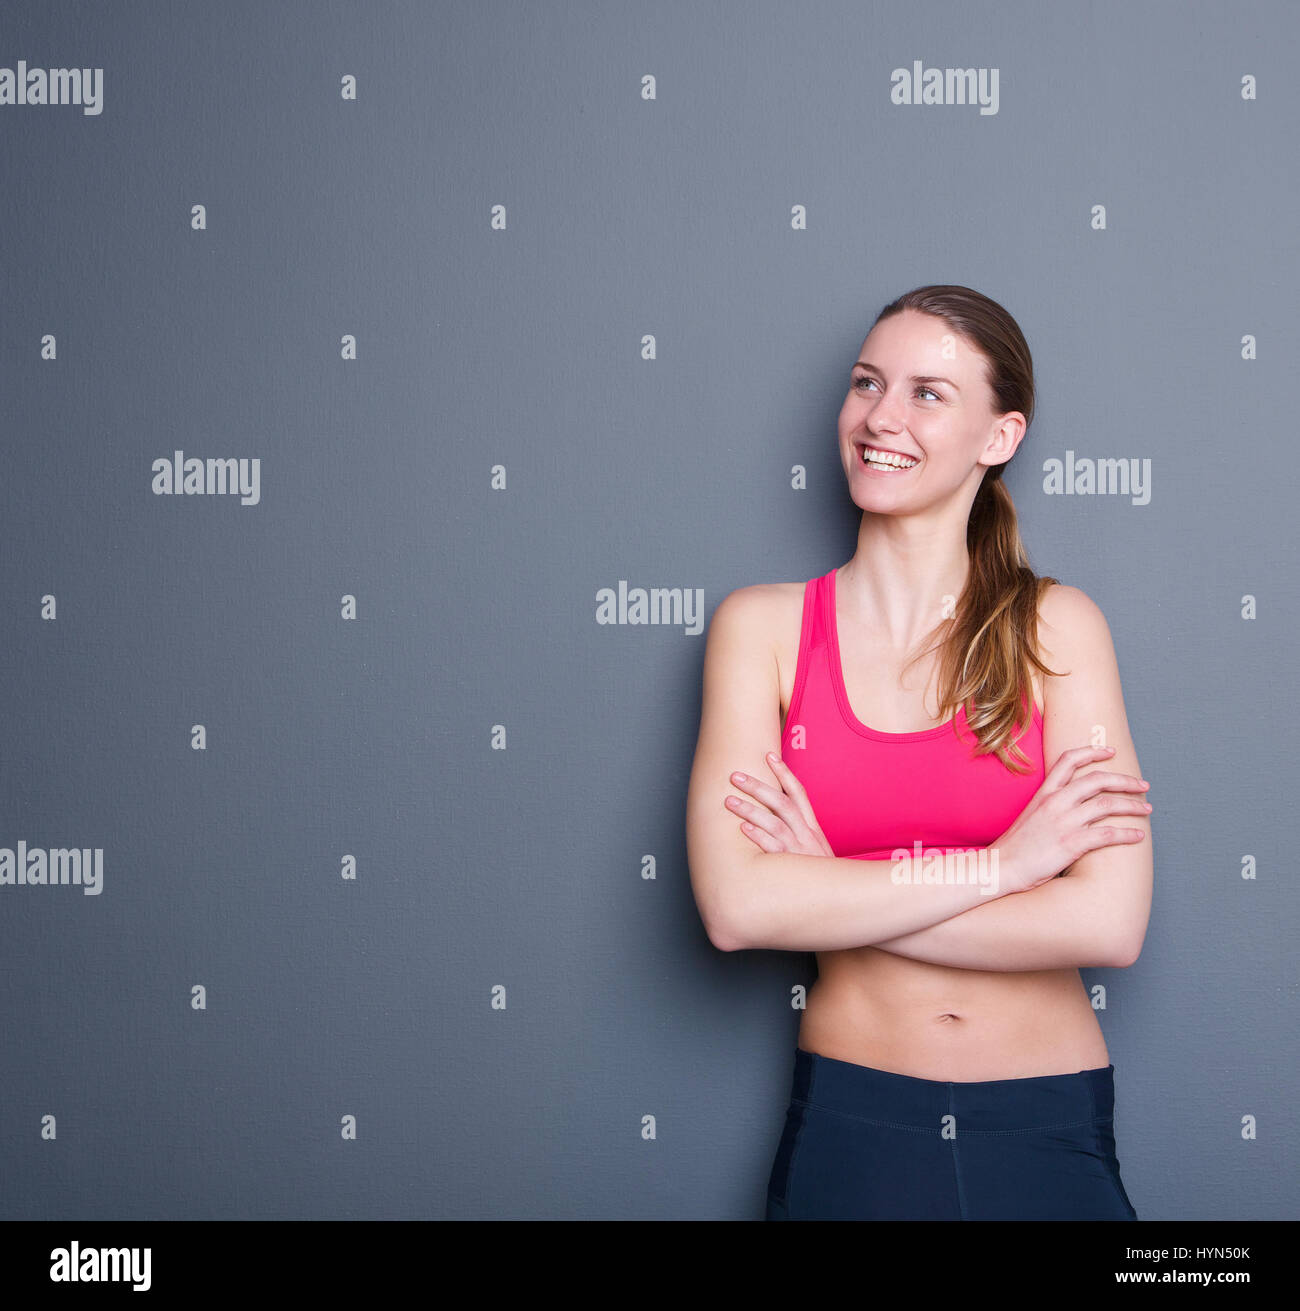 Portrait d'une jolie jeune femme sportive smiling, portrait sur fond gris Banque D'Images